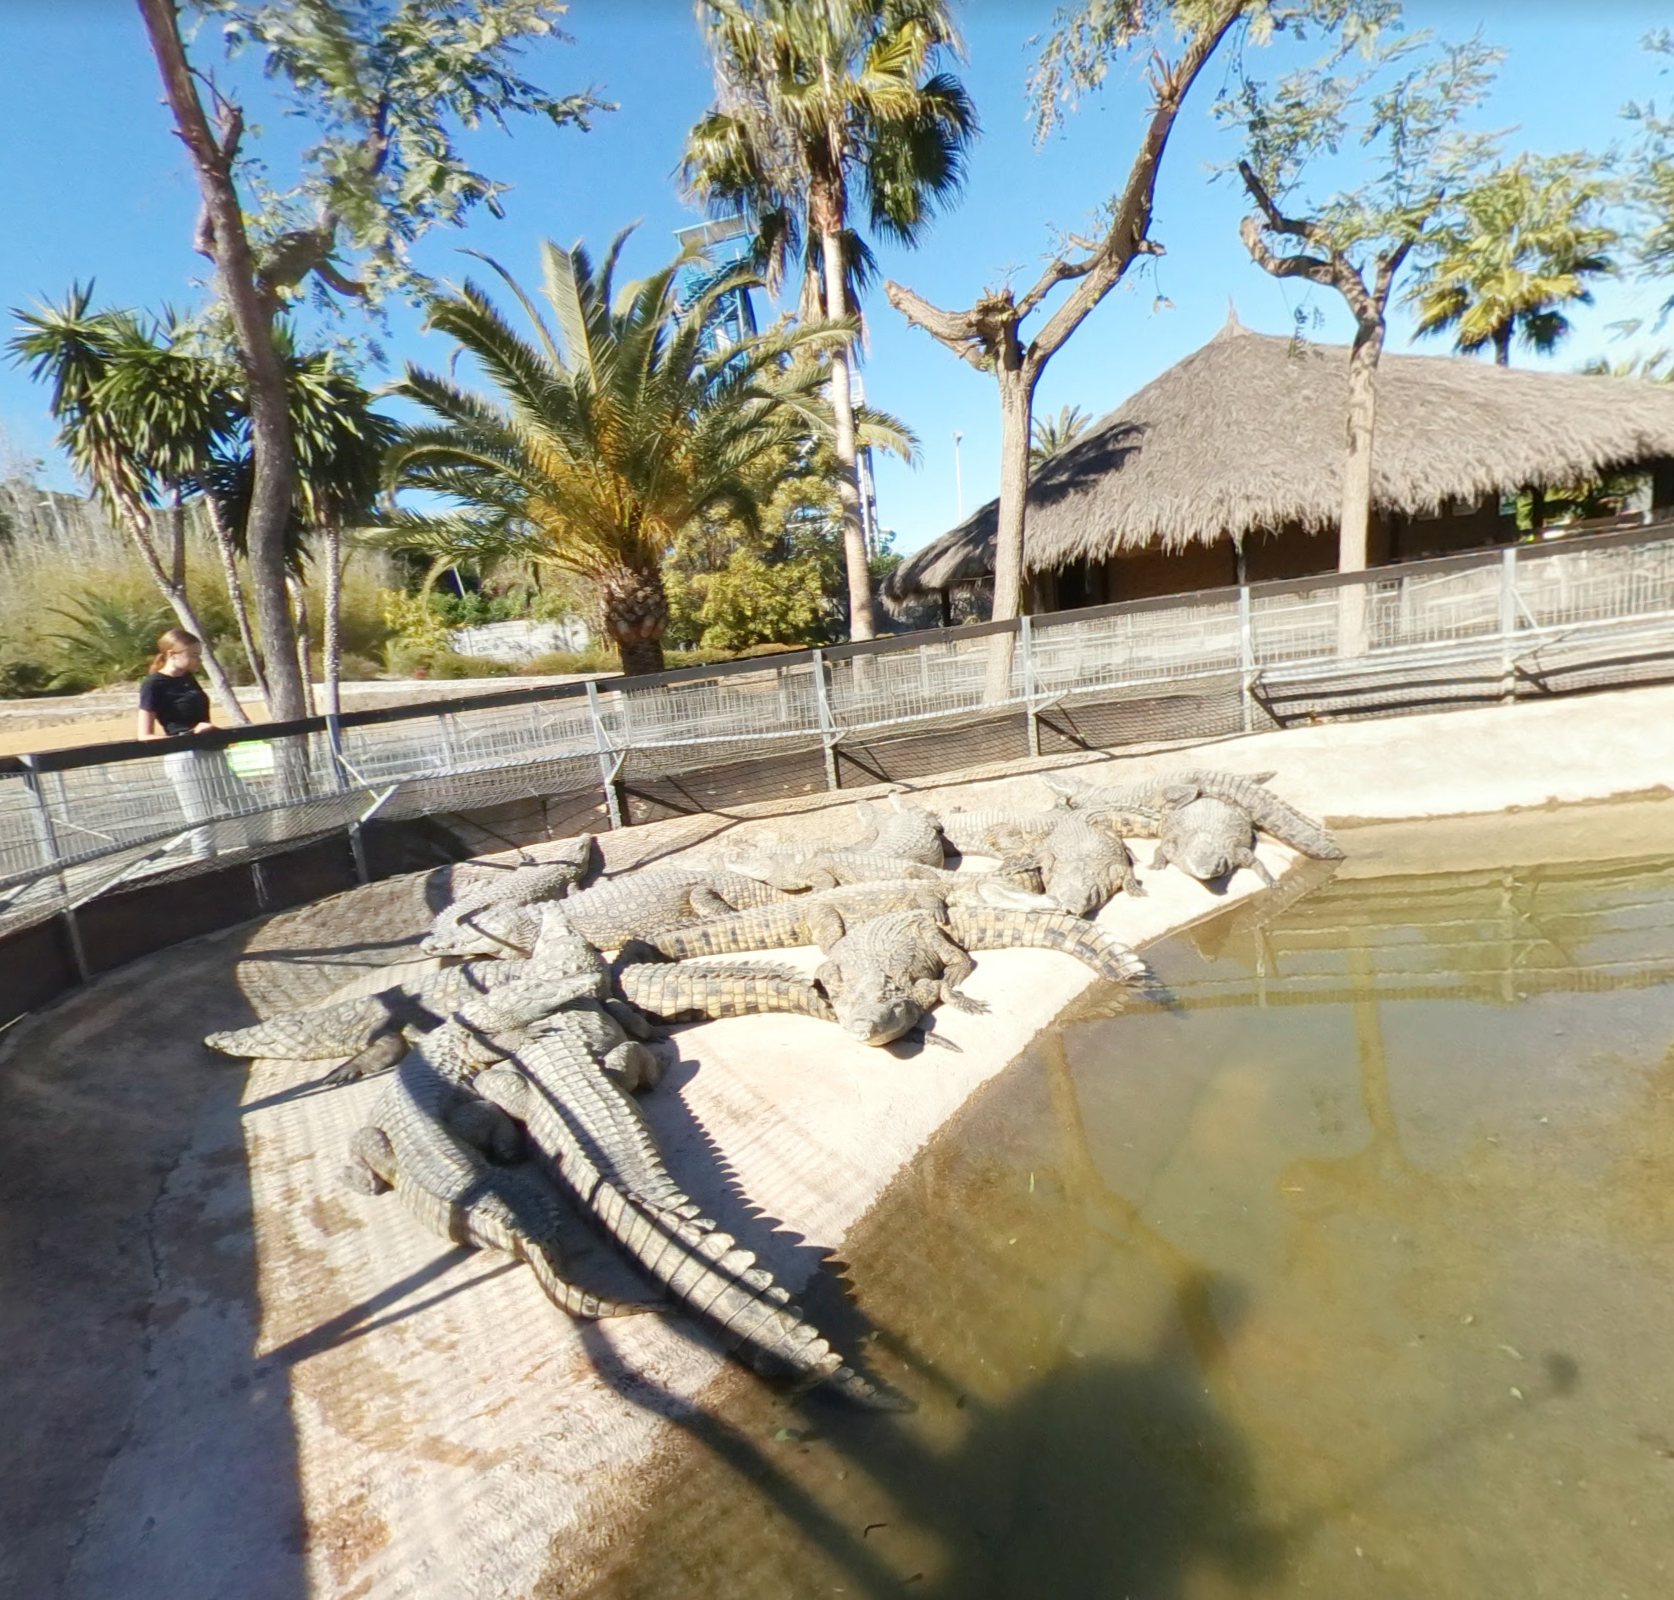 Crocodile Park by Google Earth